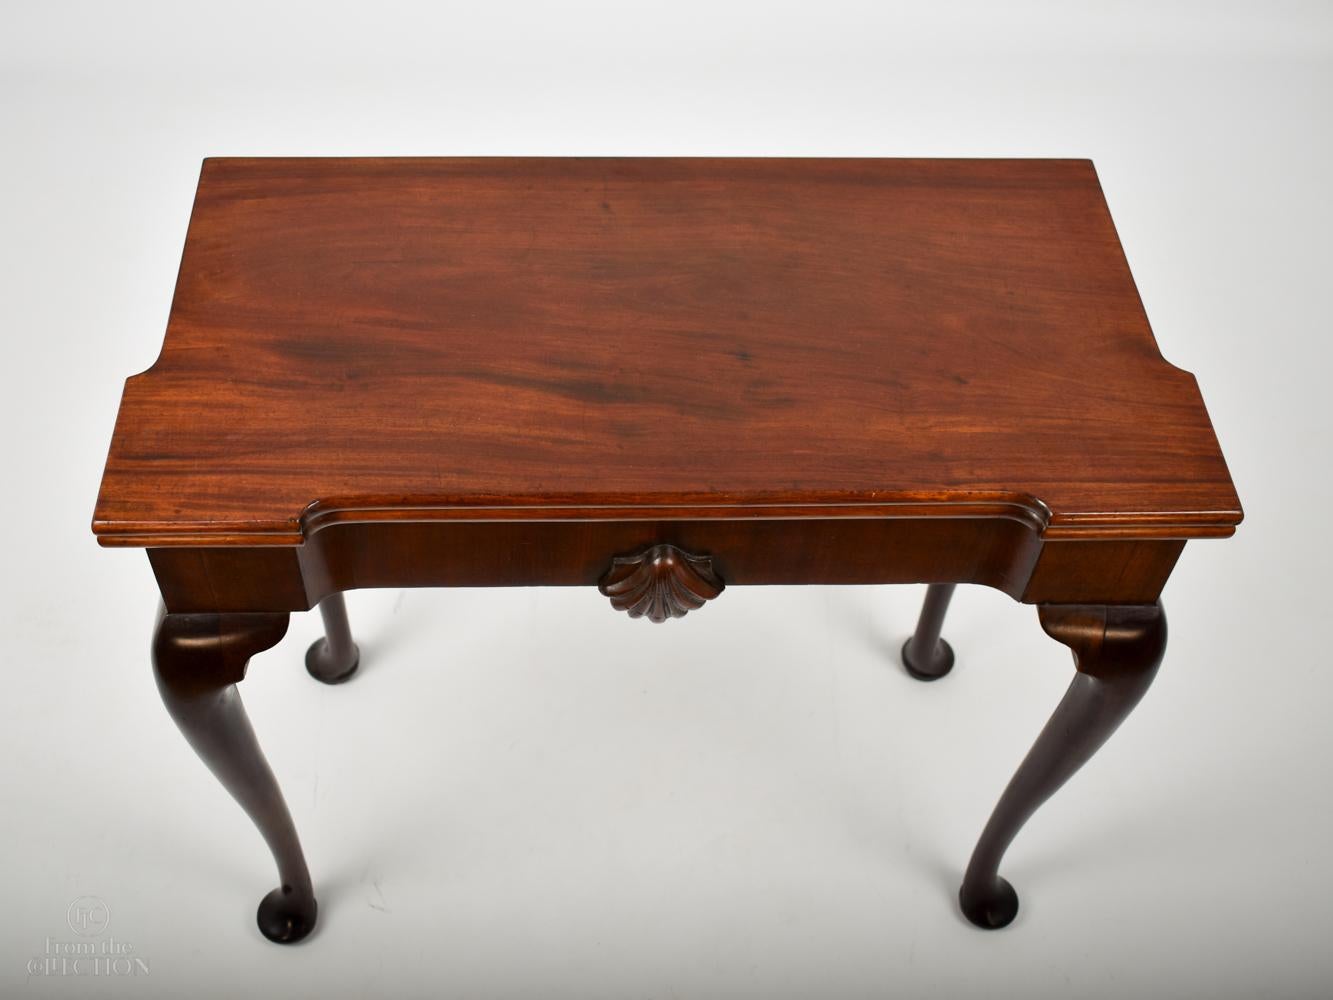 Ein feiner irischer Spieltisch aus Mahagoni, circa. 1770. Dieser Tisch lässt sich auf einem Ziehharmonika-Mechanismus ausklappen und bietet eine grüne Baisé-Platte mit vier Vertiefungen und vier quadratischen Kerzen- oder Glashaltern. Die